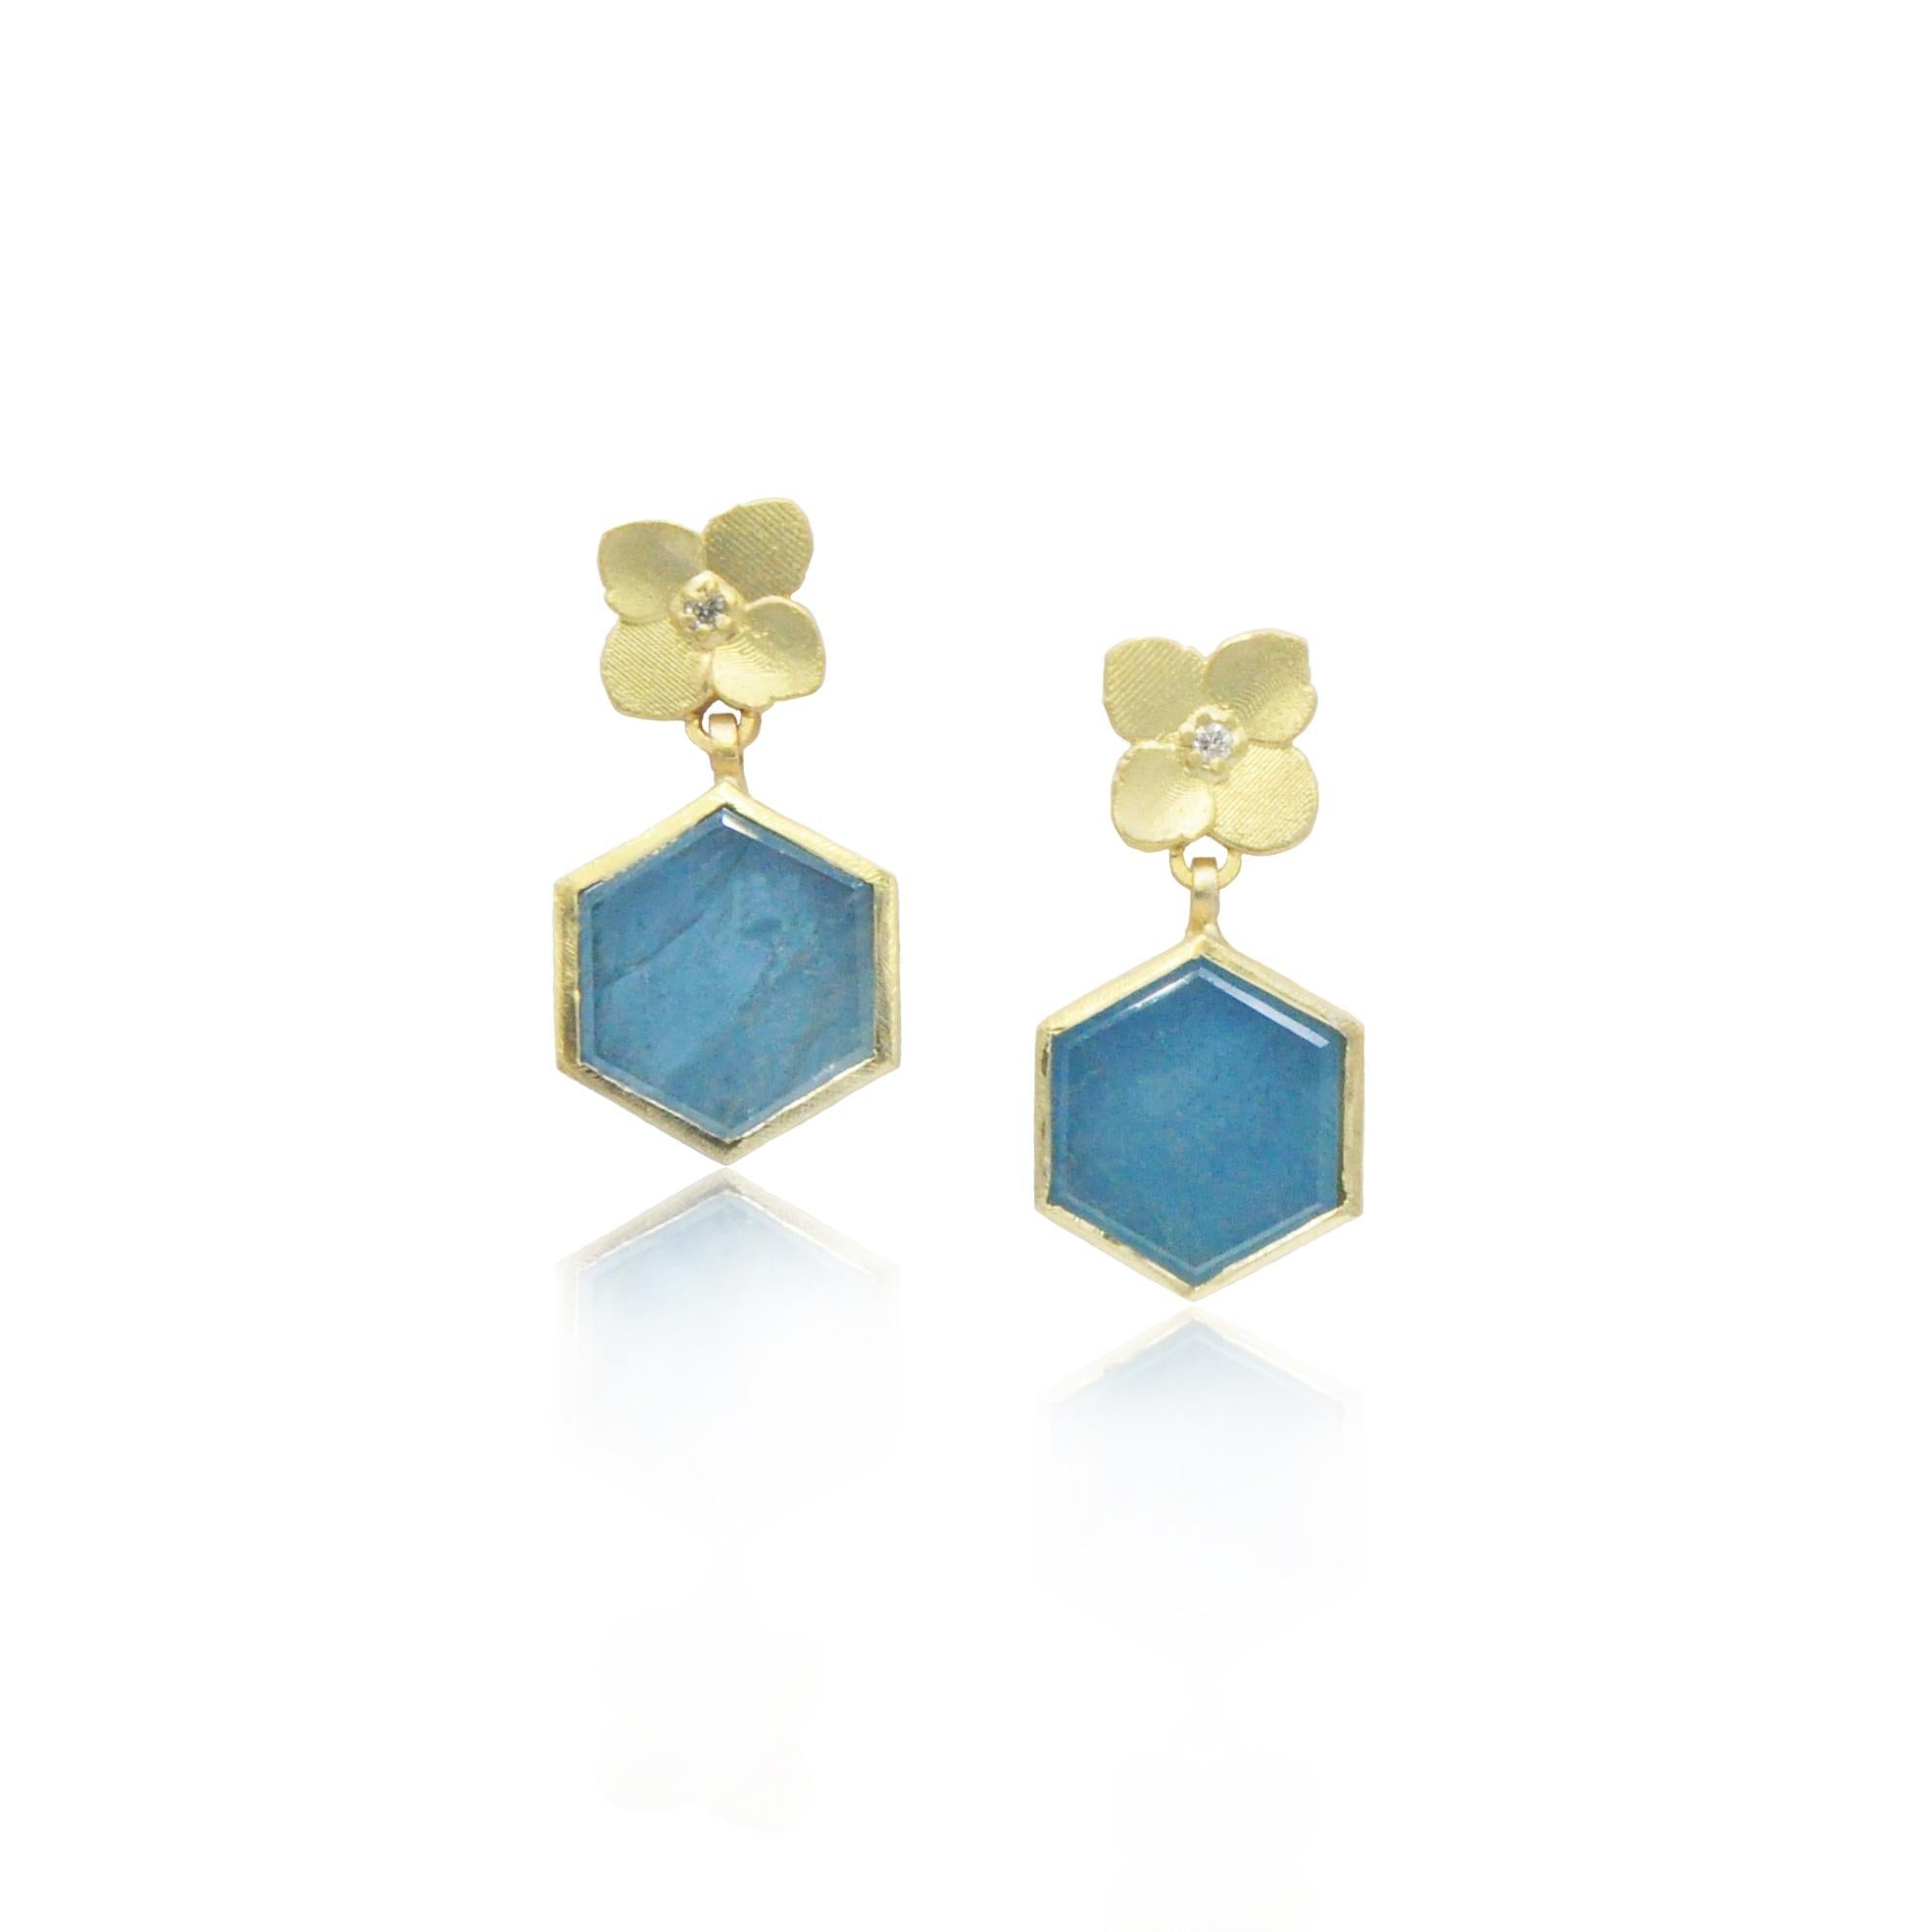 Diese hübschen Ohrringe erinnern an die Schönheit des Frühlings. Zarte Hortensienblüten aus 18-karätigem Gold mit Diamanten in der Mitte sitzen auf einem wässrigen blauen Aquamarin, der in 18-karätigem Gold gefasst ist.

Wir bieten verschiedene